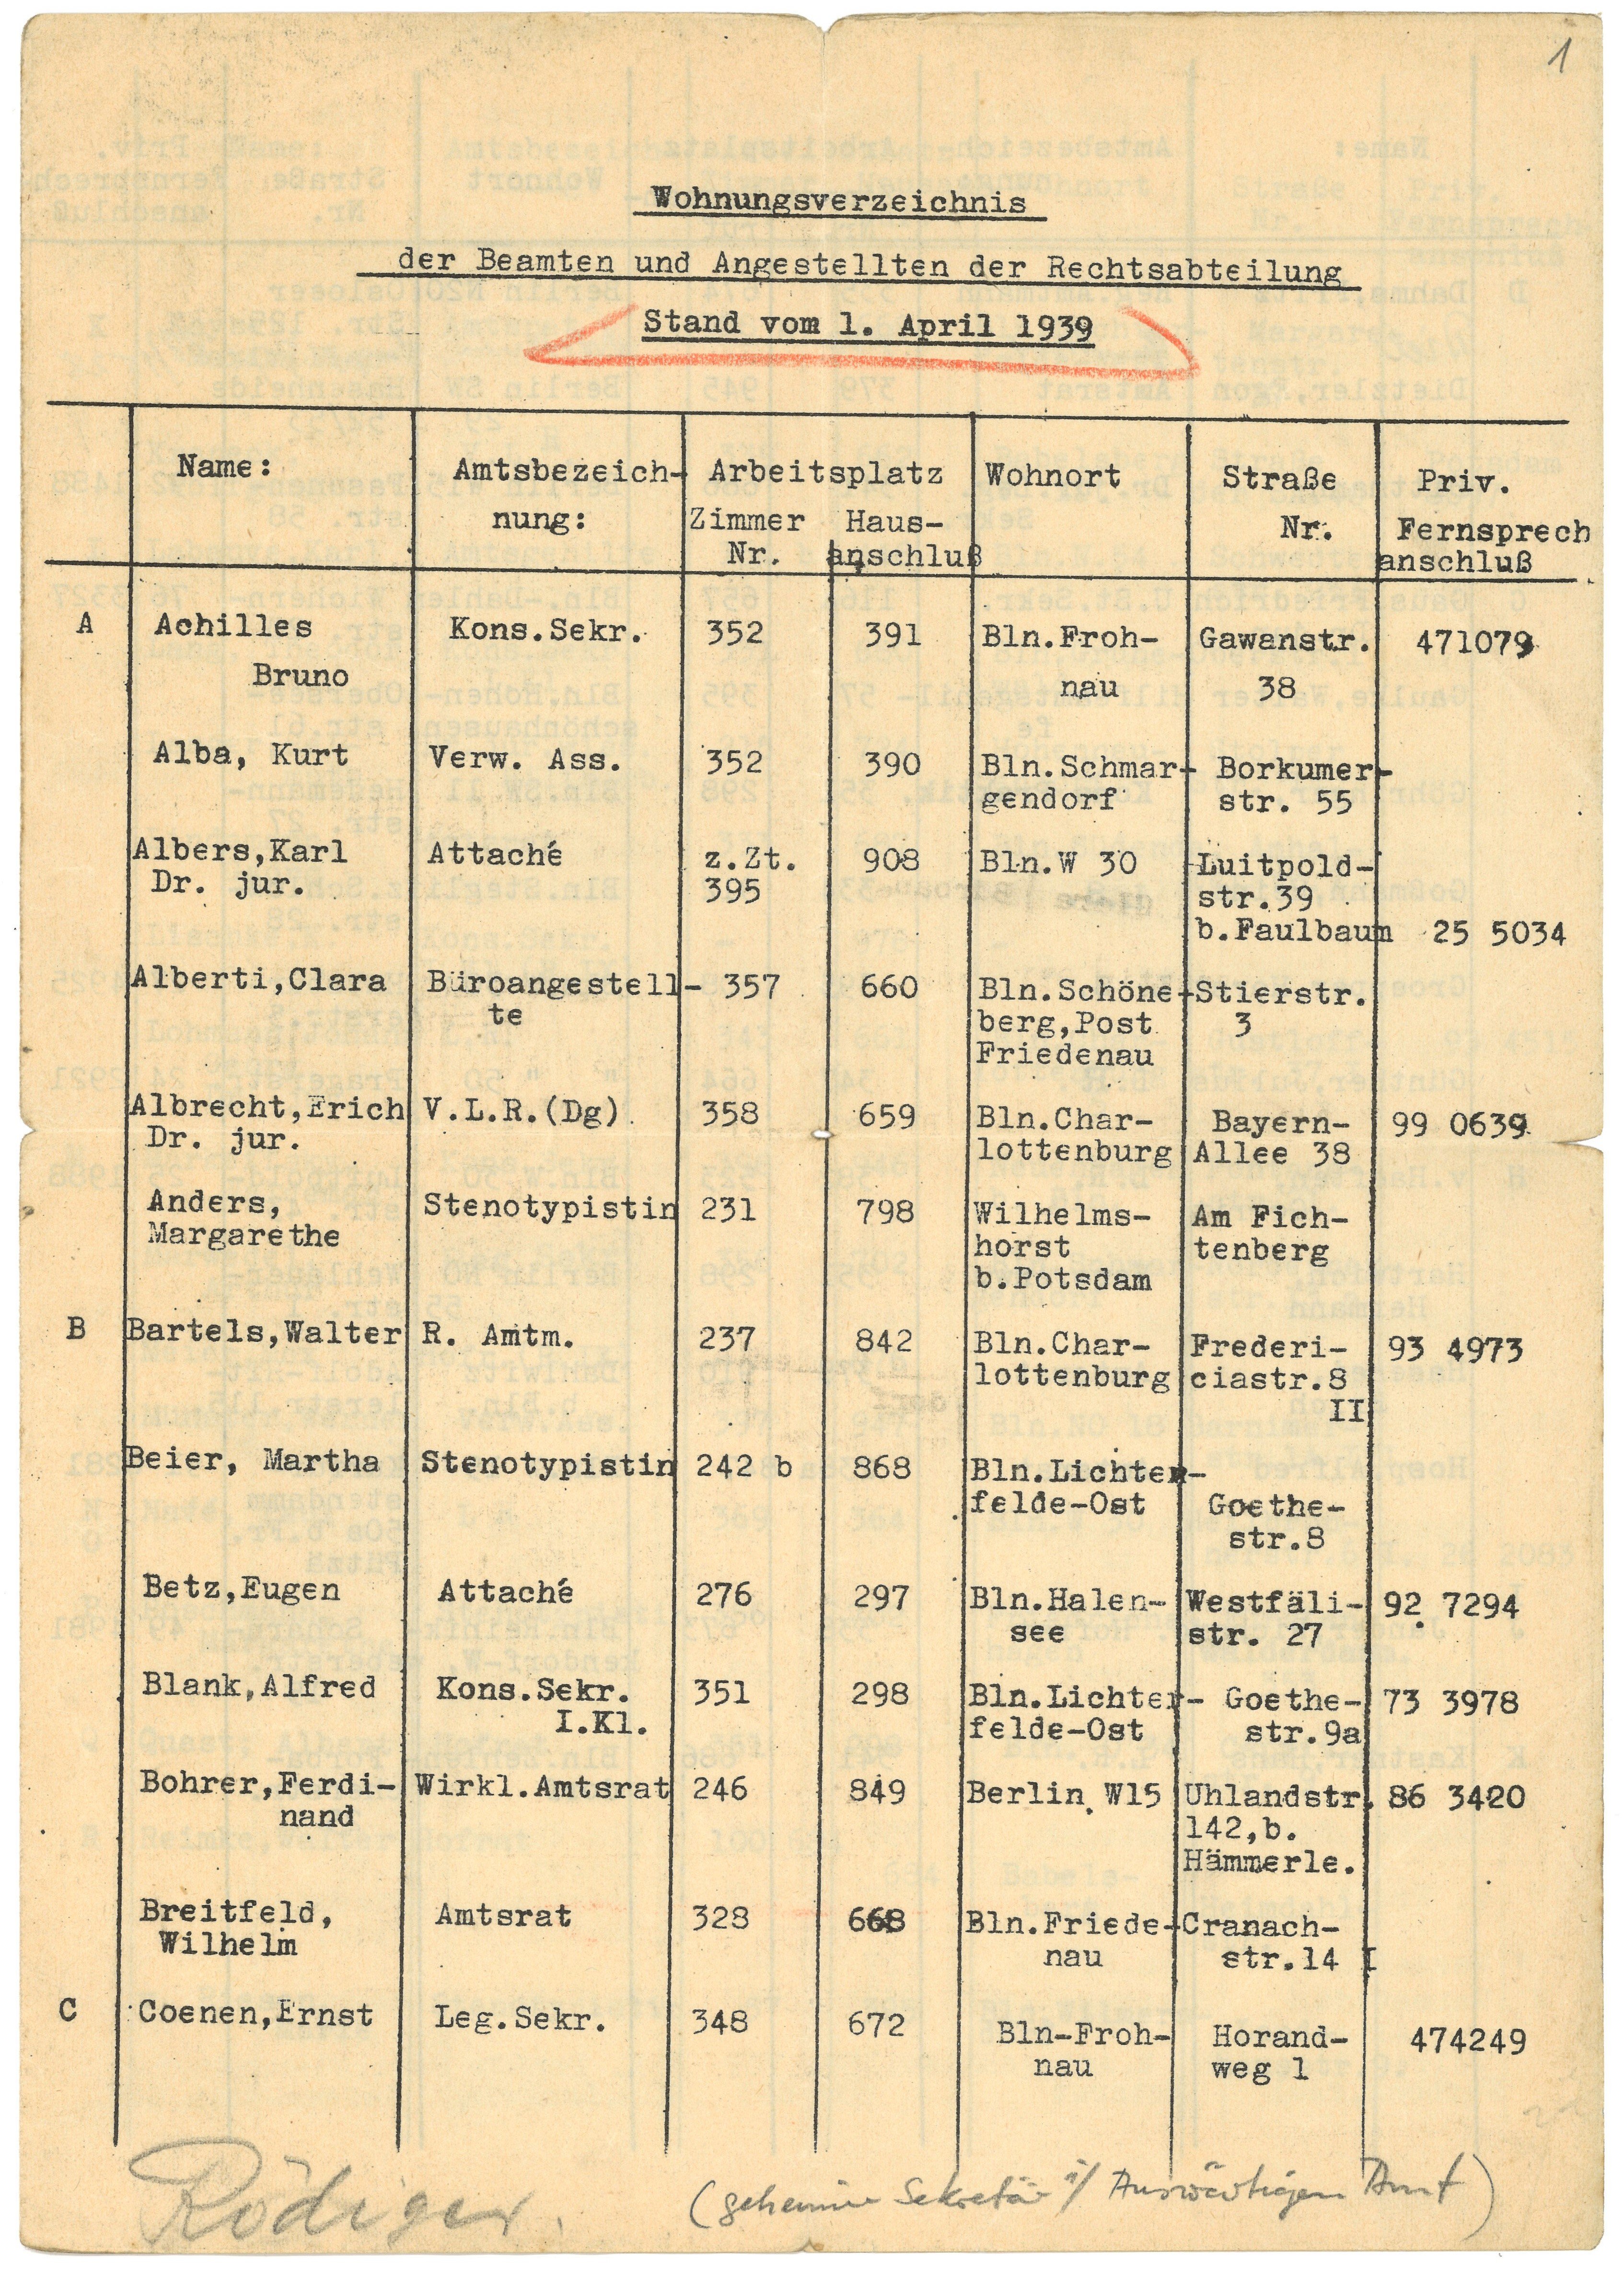 Wohnungsverzeichnis der Beamten und Angestellten der Rechtsabteilung des Auswärtigen Amtes 1939 (Landesgeschichtliche Vereinigung für die Mark Brandenburg e.V., Archiv CC BY)